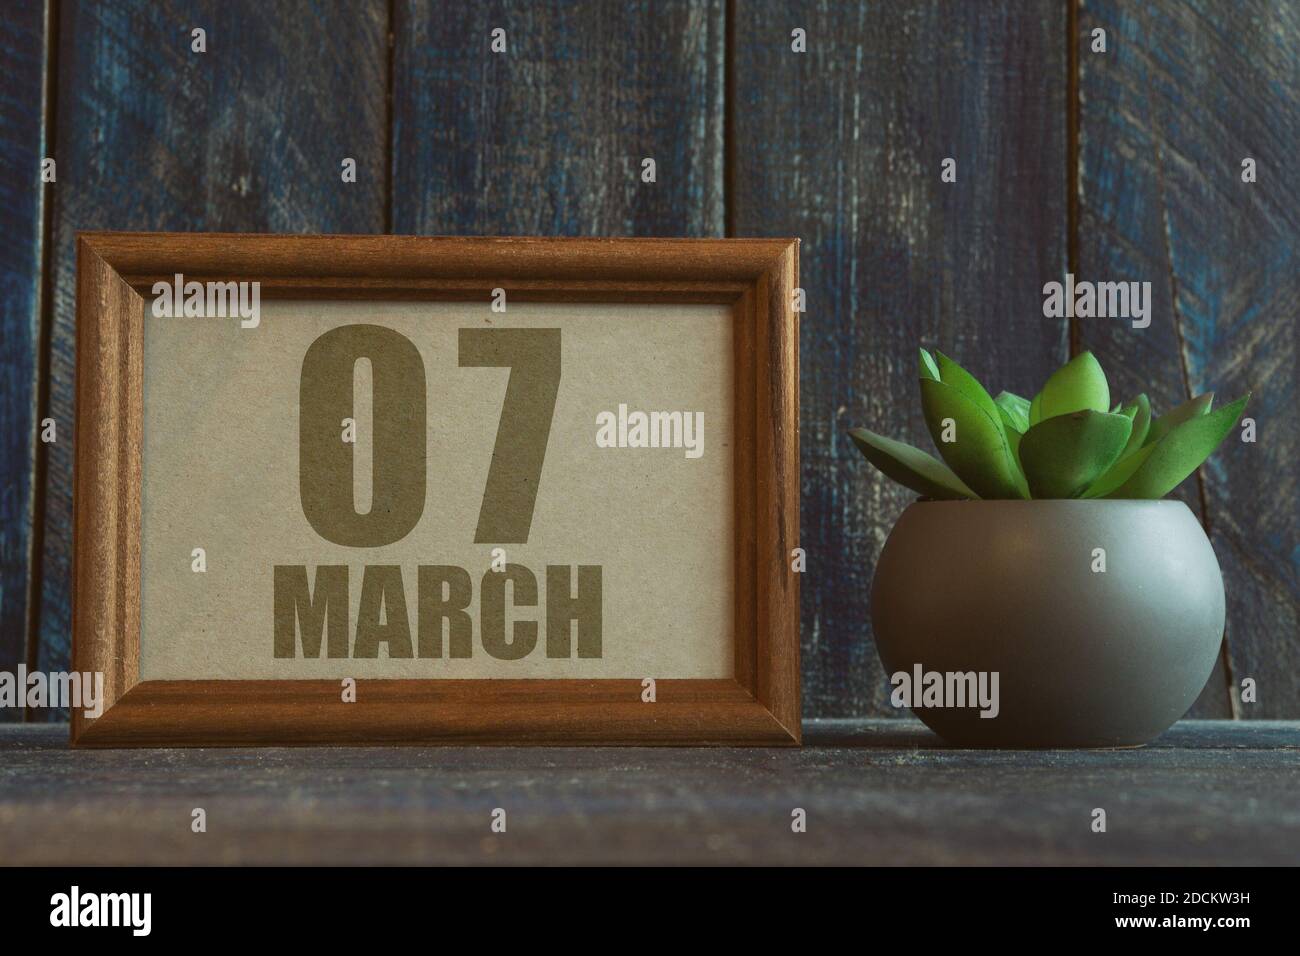 märz 7th. Tag 7 des Monats, Datum im Rahmen neben Sukkulente auf hölzernen Hintergrund Frühlingsmonat, Tag des Jahres Konzept Stockfoto